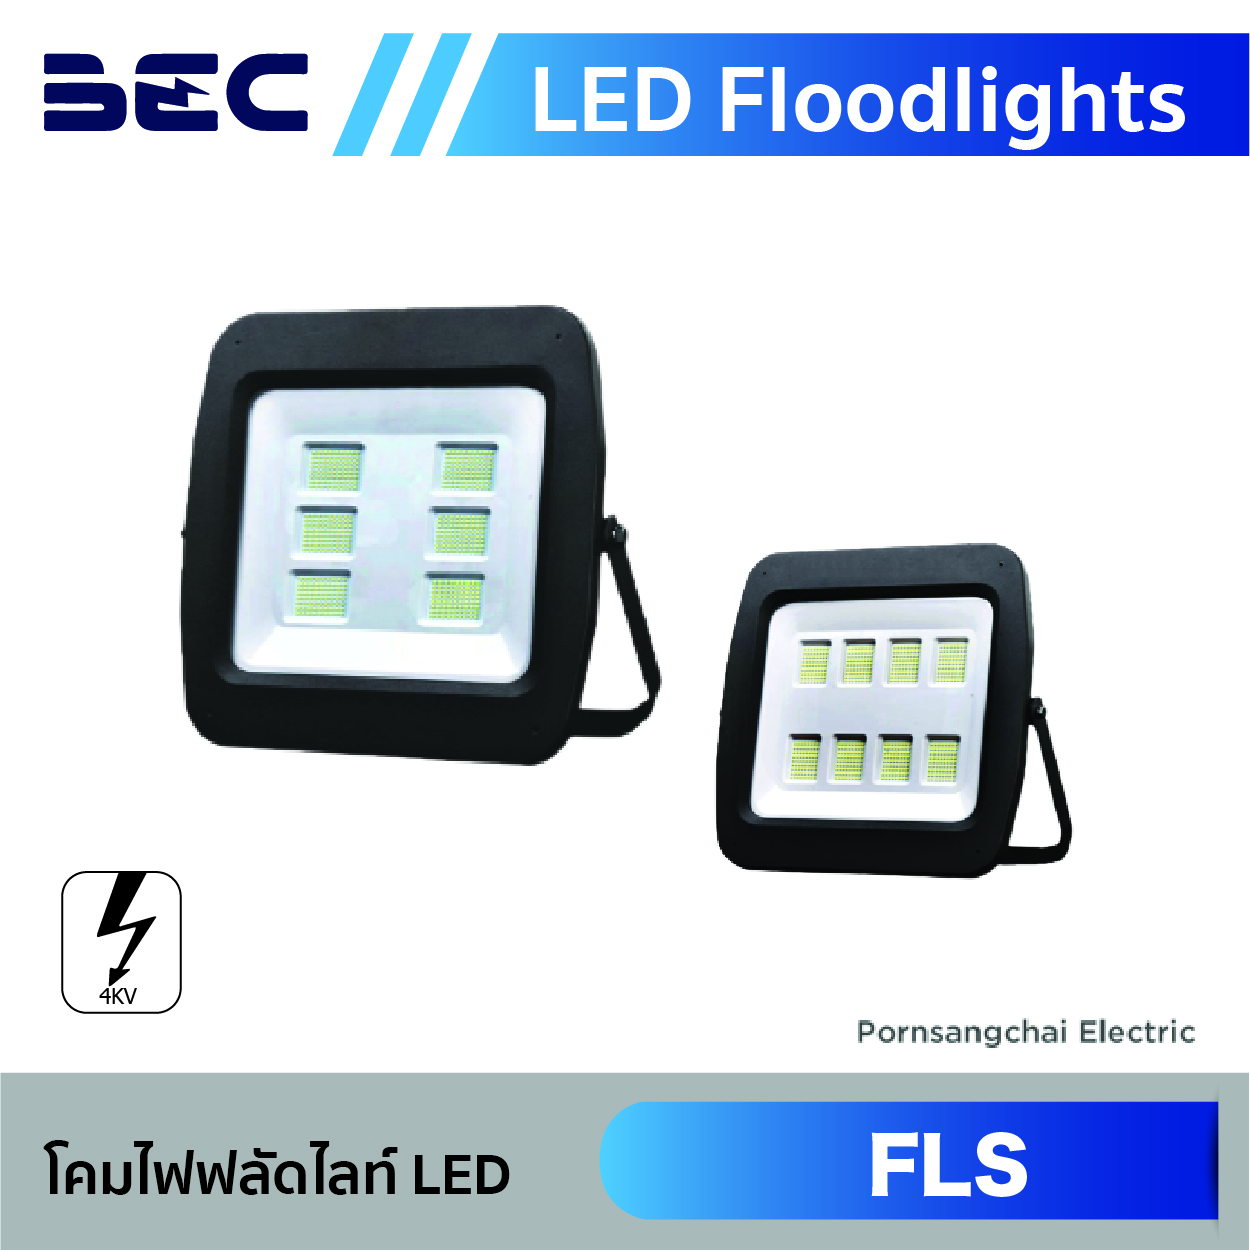 โคมไฟฟลัดไลท์ LED BEC รุ่น FLS